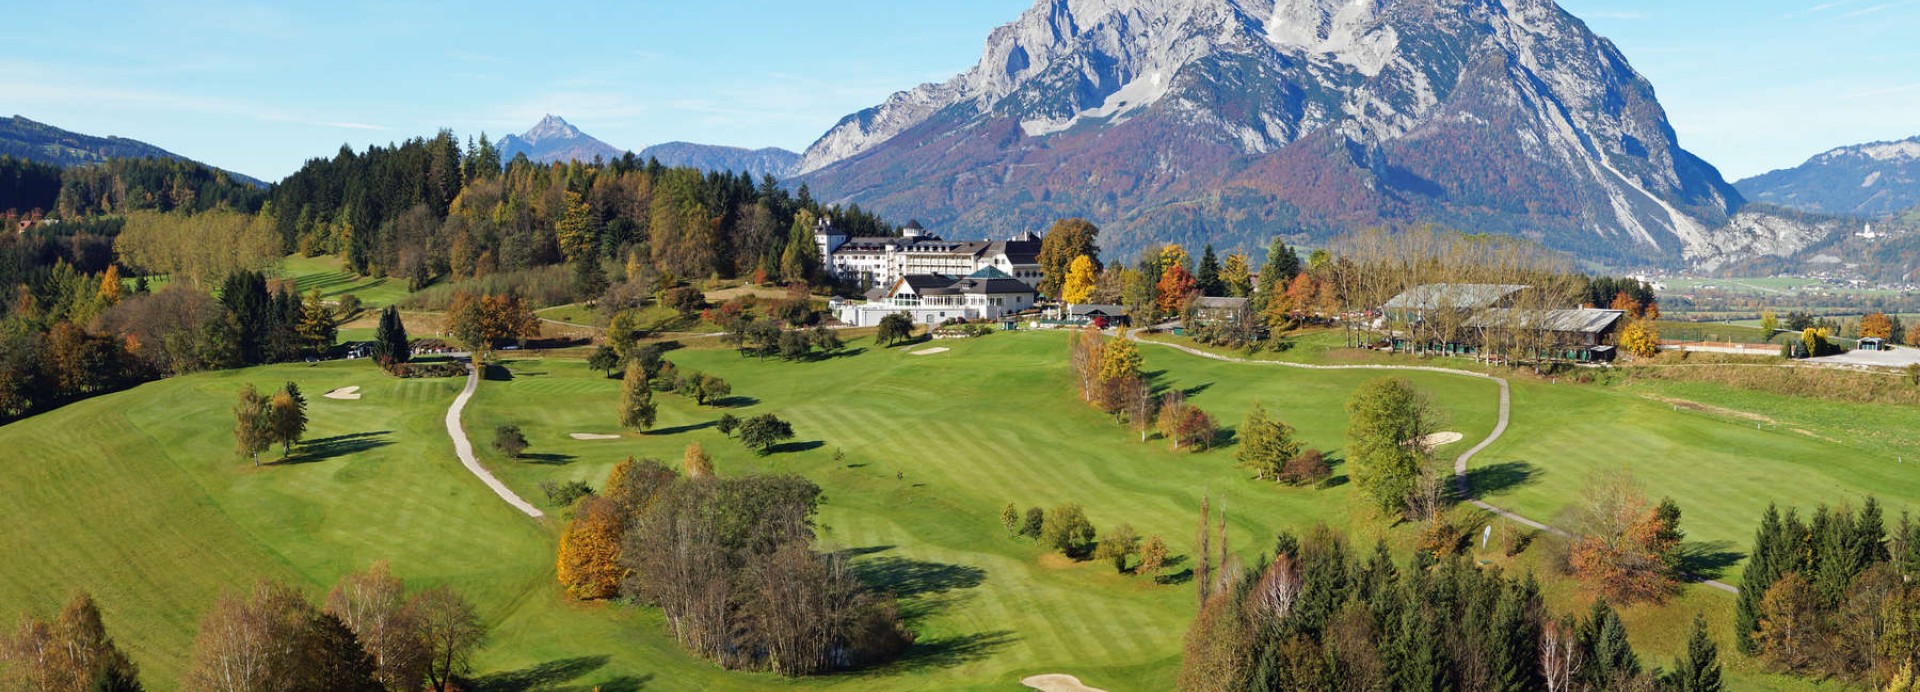 Schloss Pichlarn Golf & Country Club  | Golfové zájezdy, golfová dovolená, luxusní golf